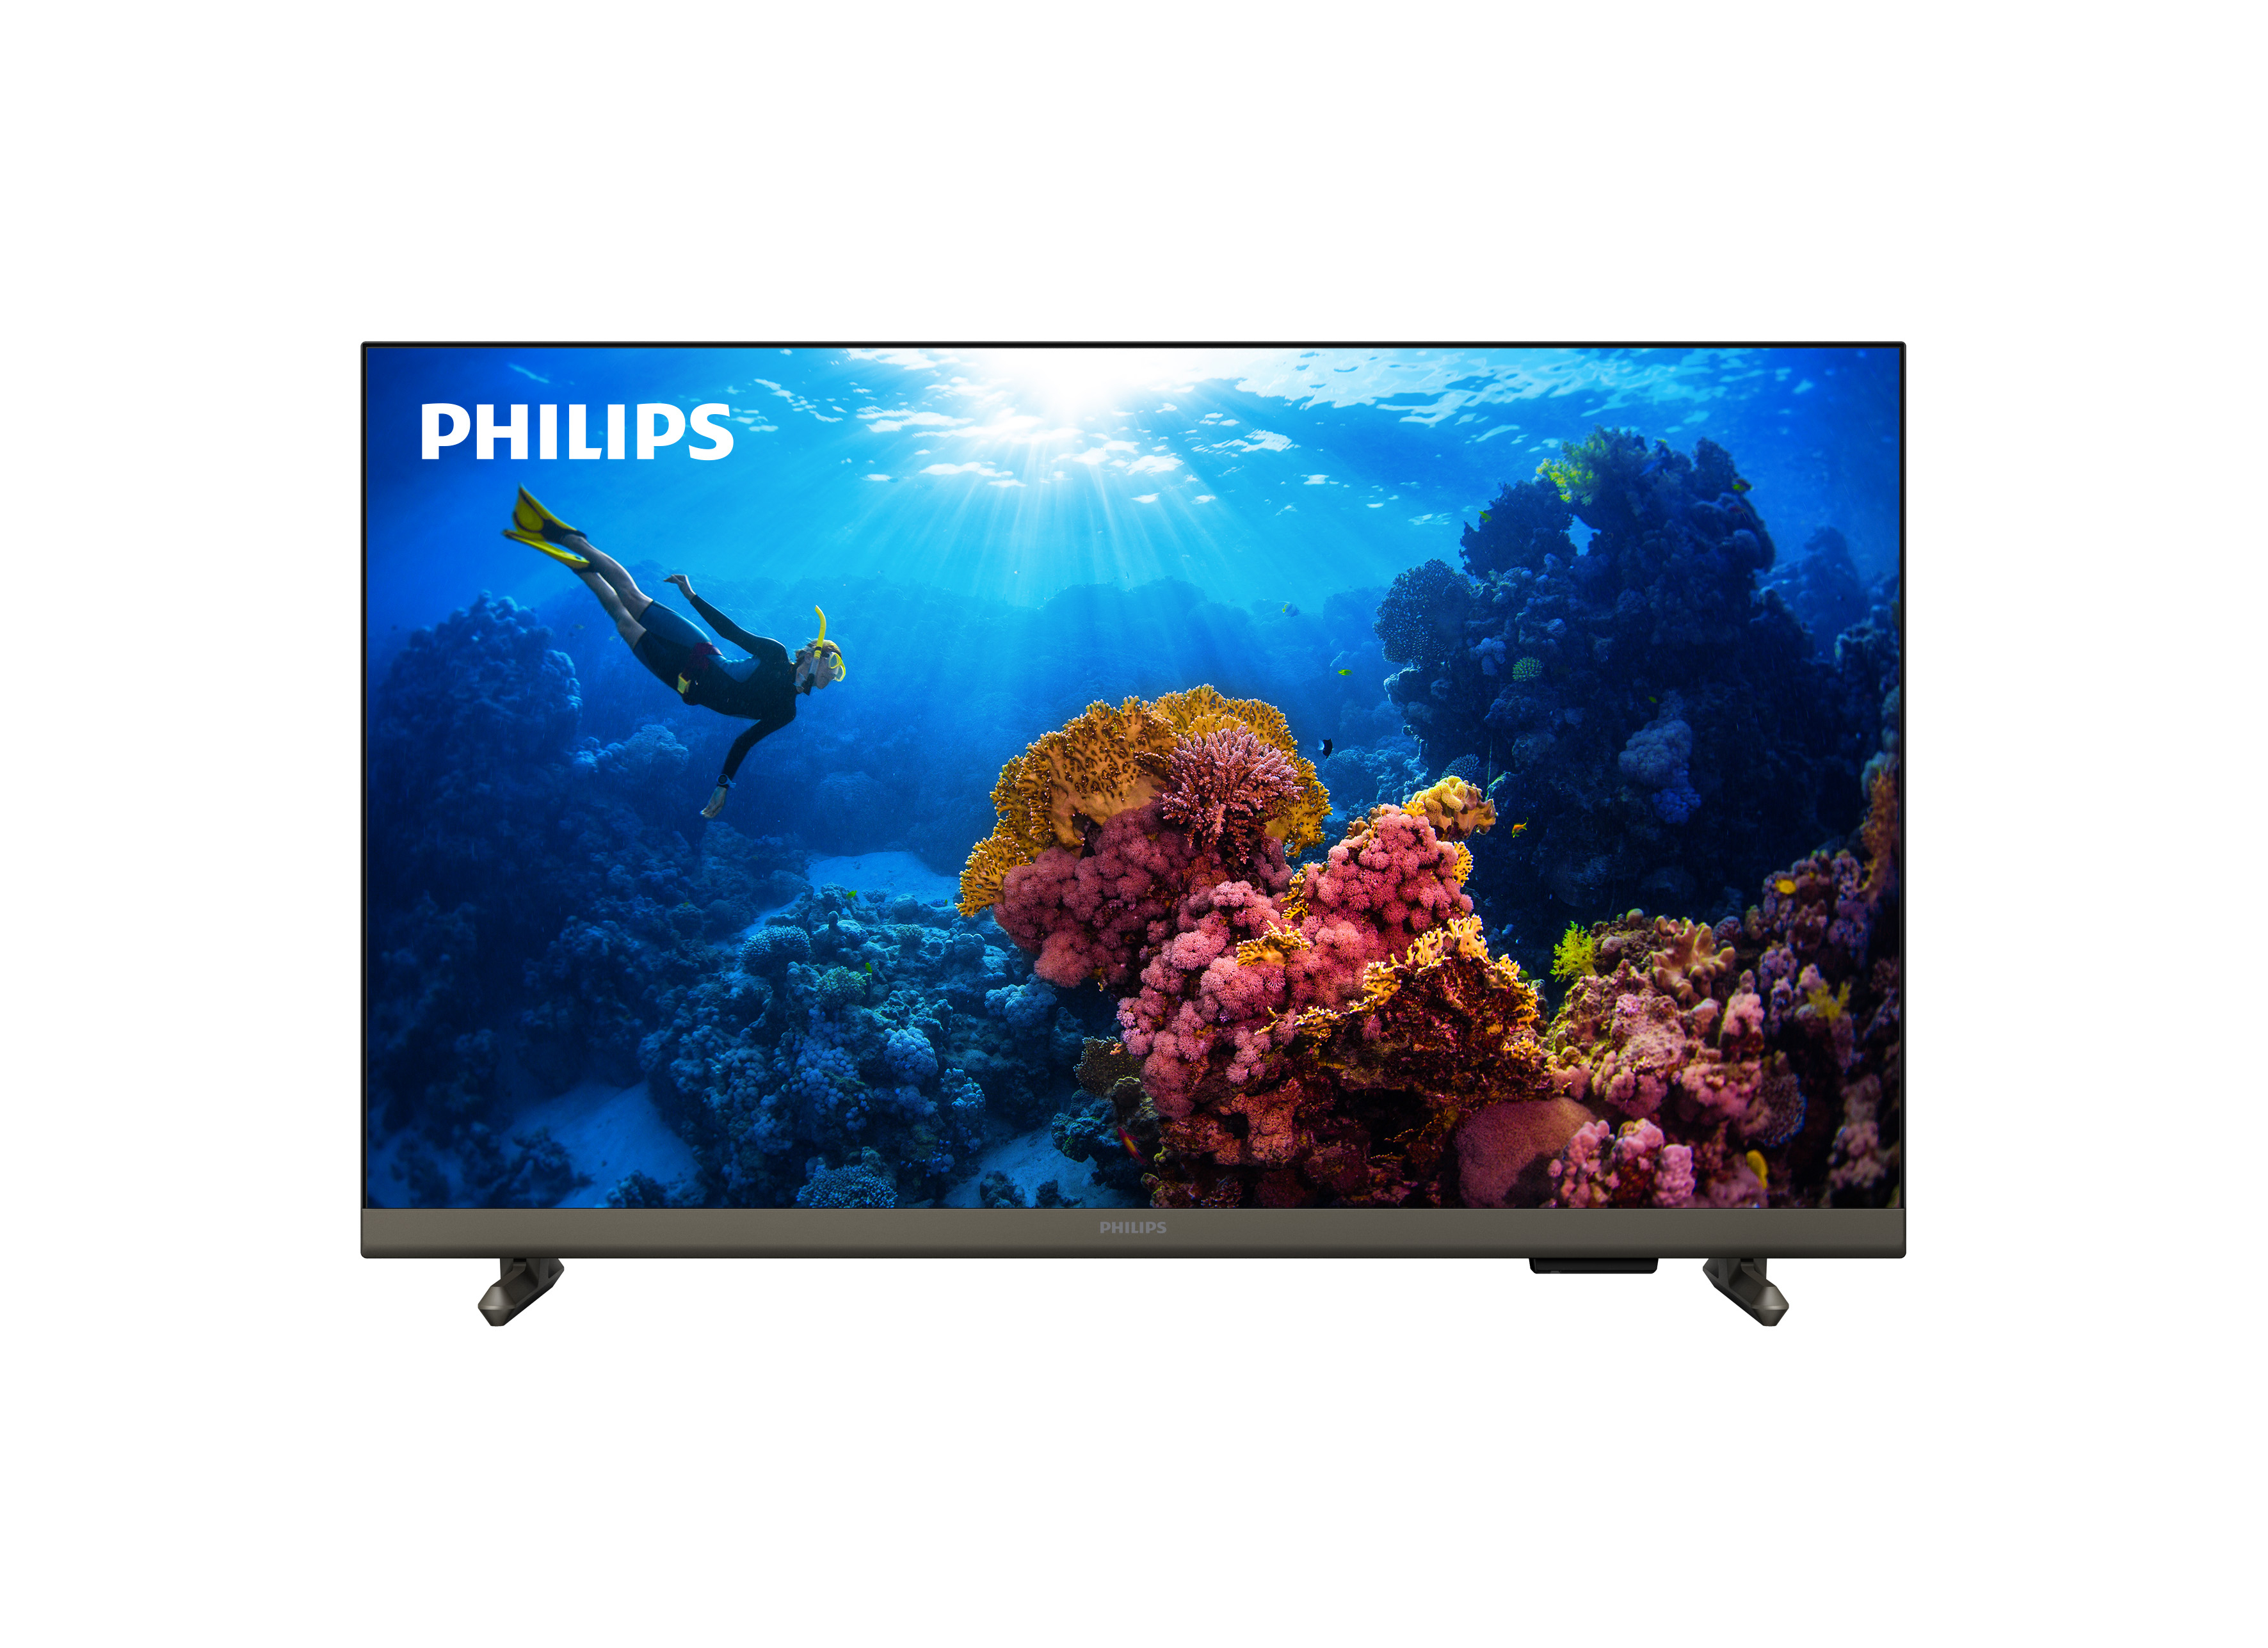 Philips LED 32PHS6808 HDTV